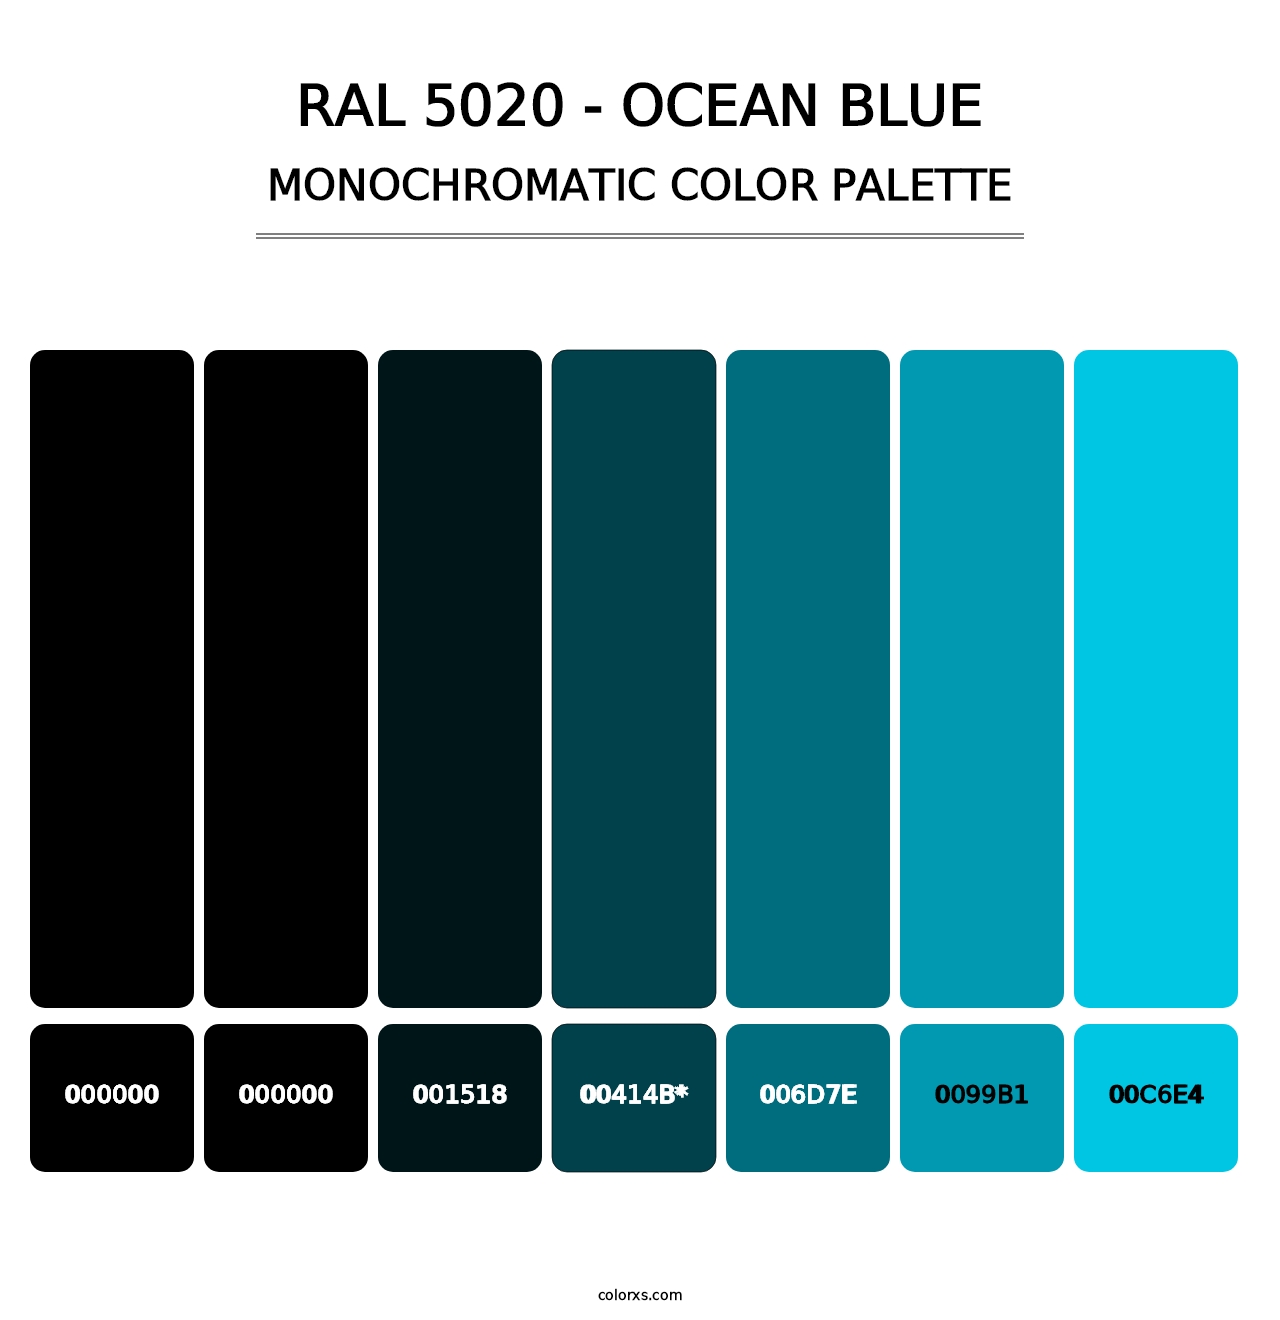 RAL 5020 - Ocean Blue - Monochromatic Color Palette